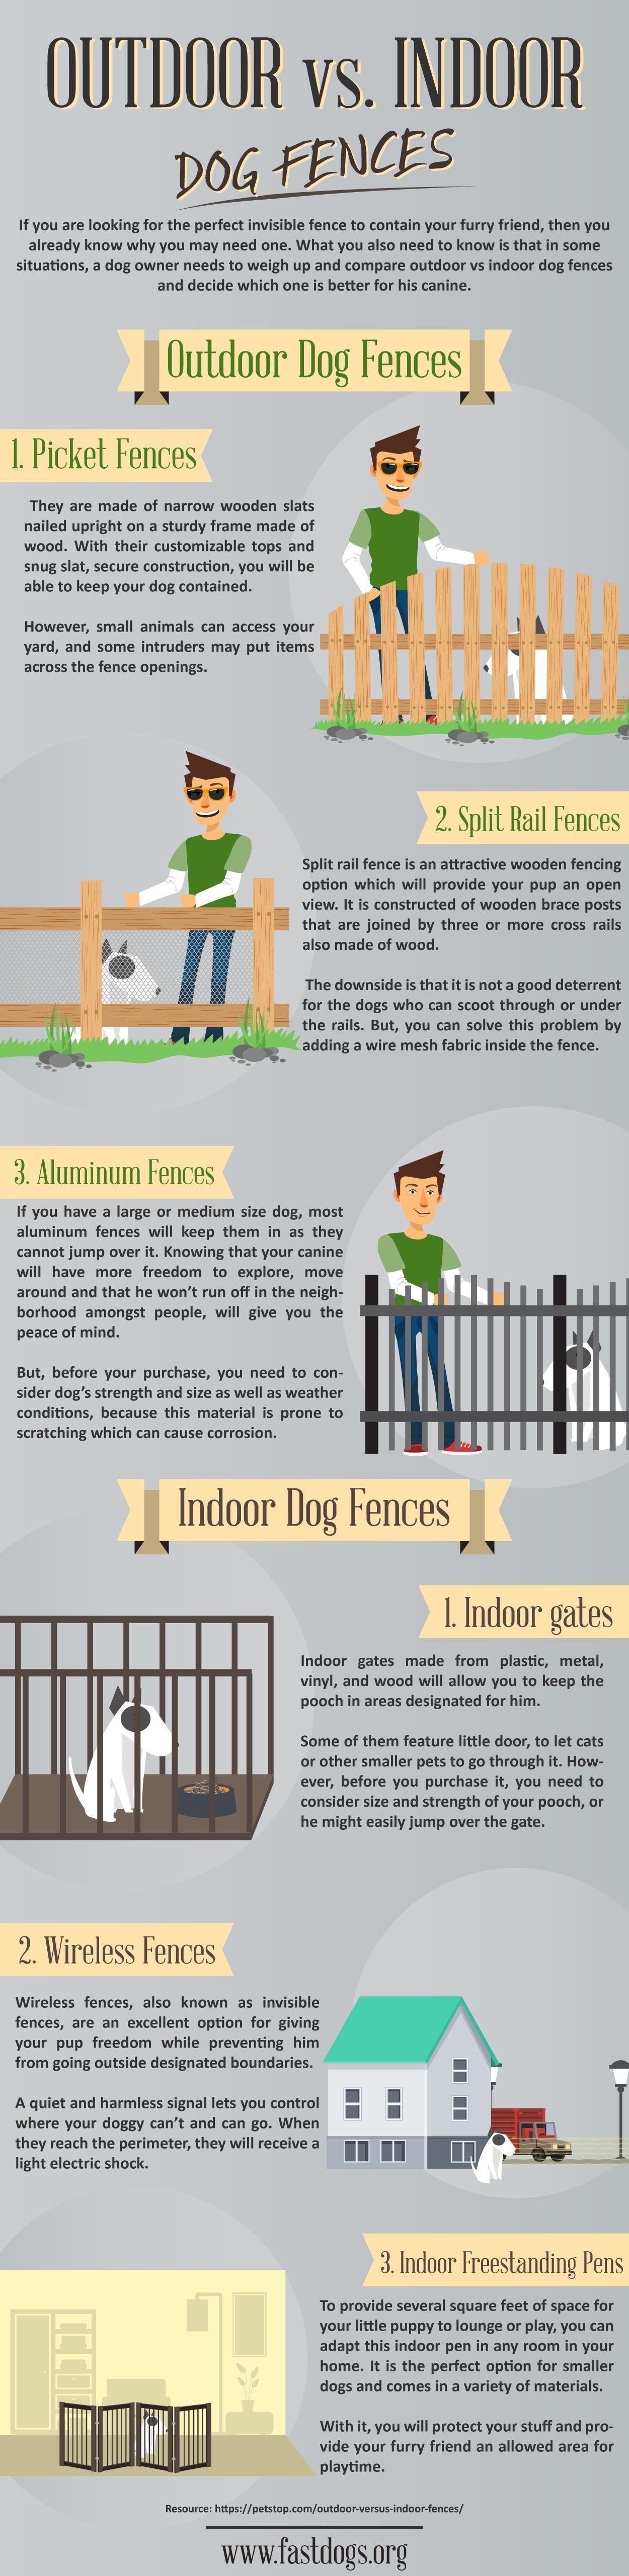 Outdoor vs. Indoor Dog Fences